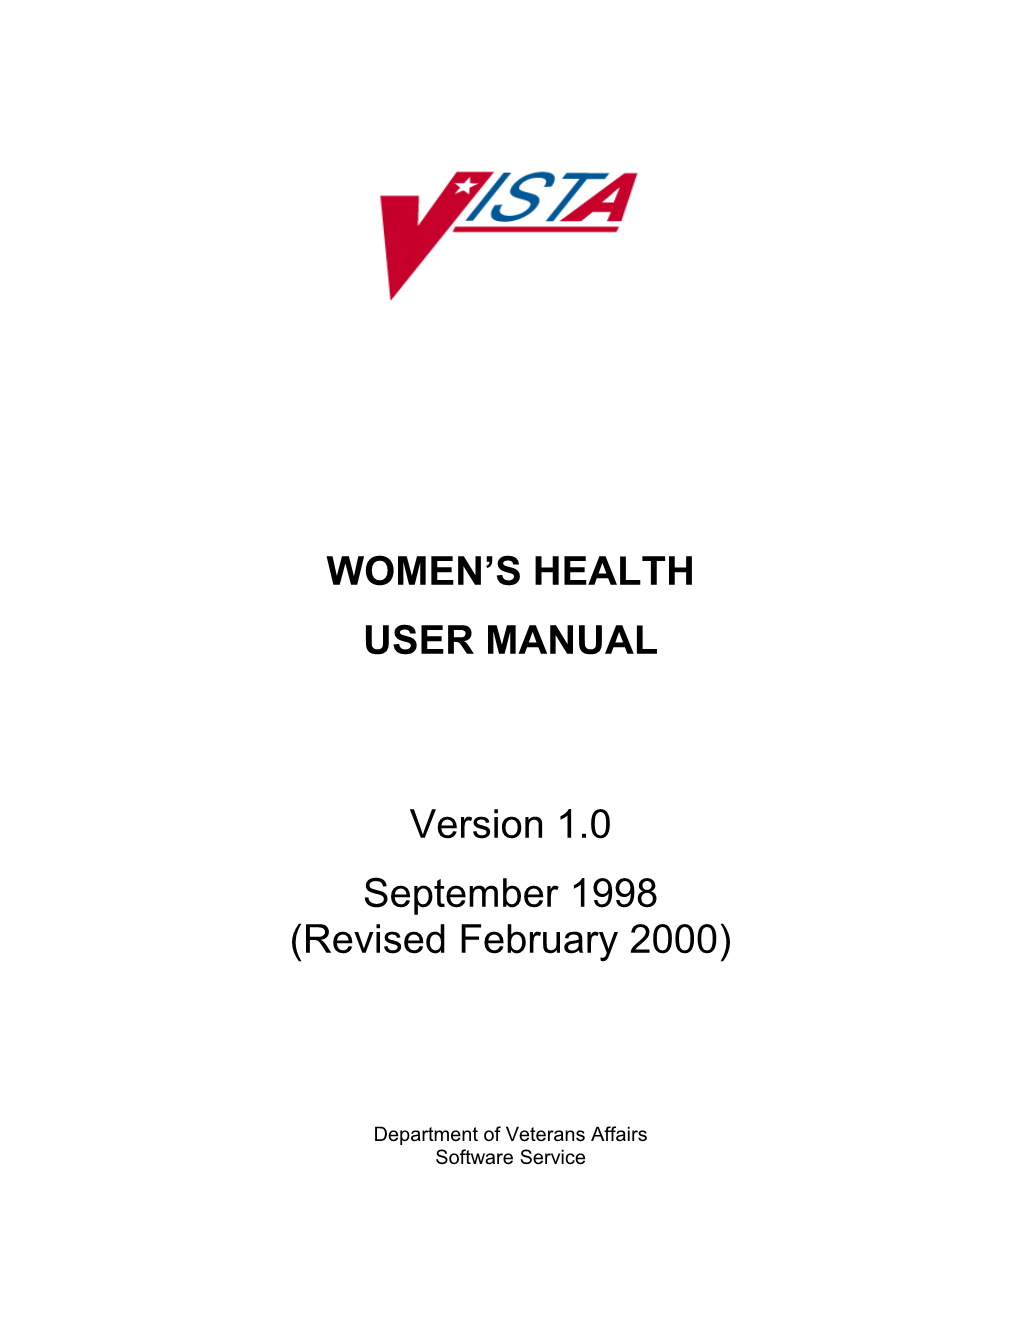 Women Veterans Health V1.0 User Manual